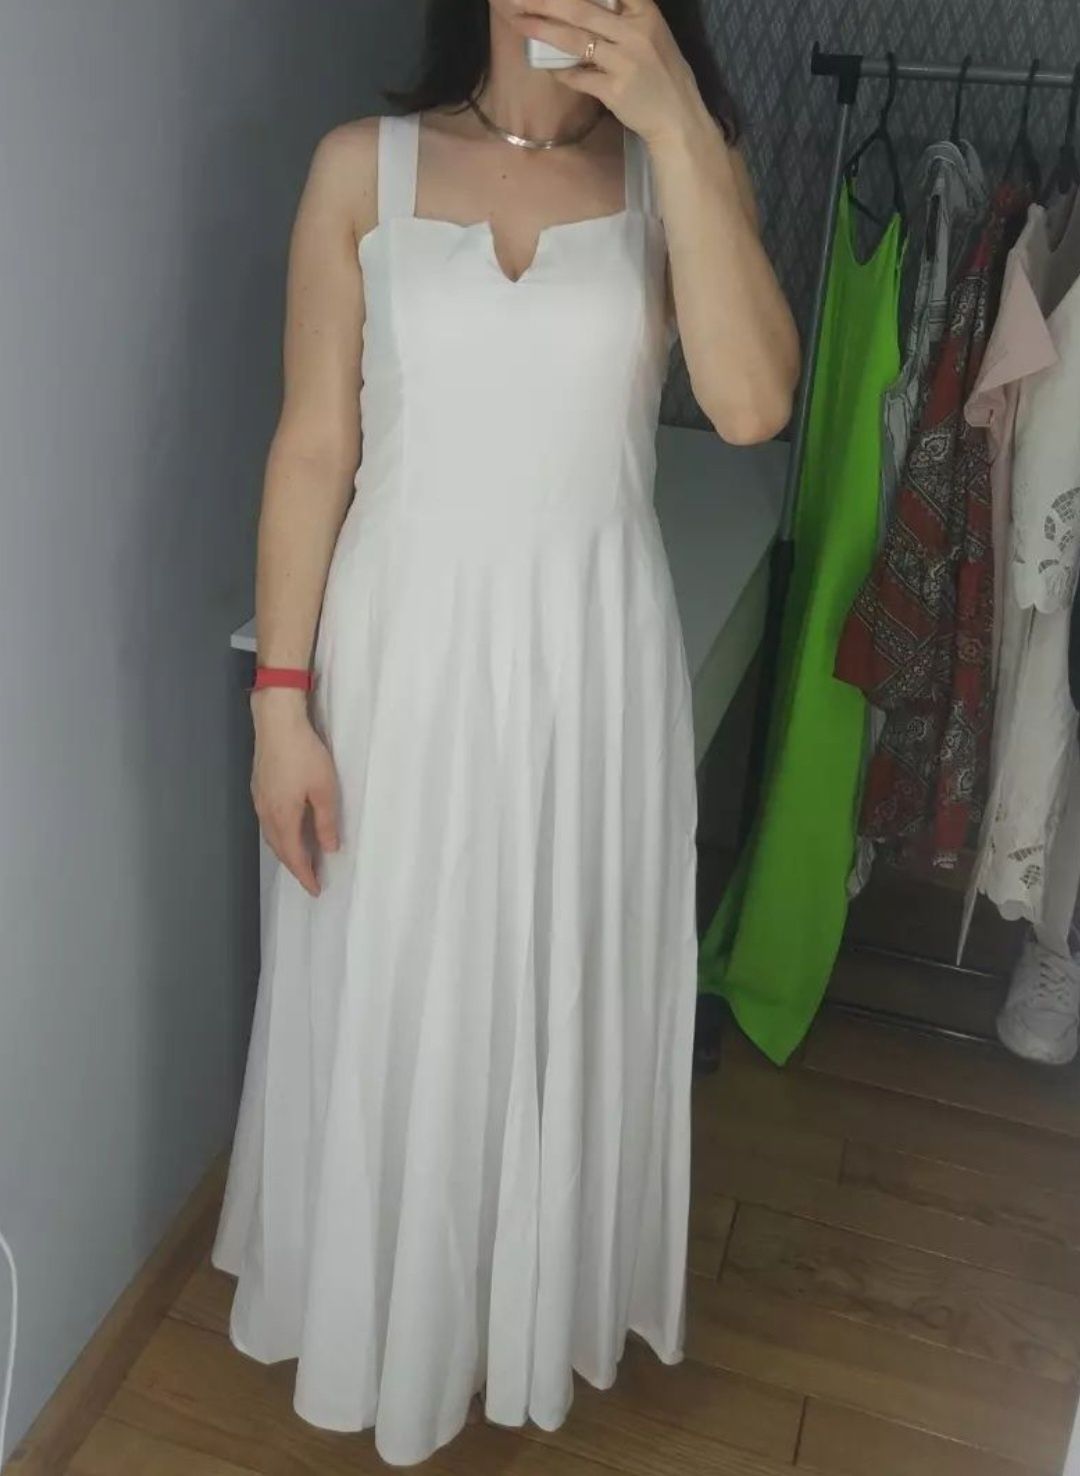 Довге біле плаття, стан нового